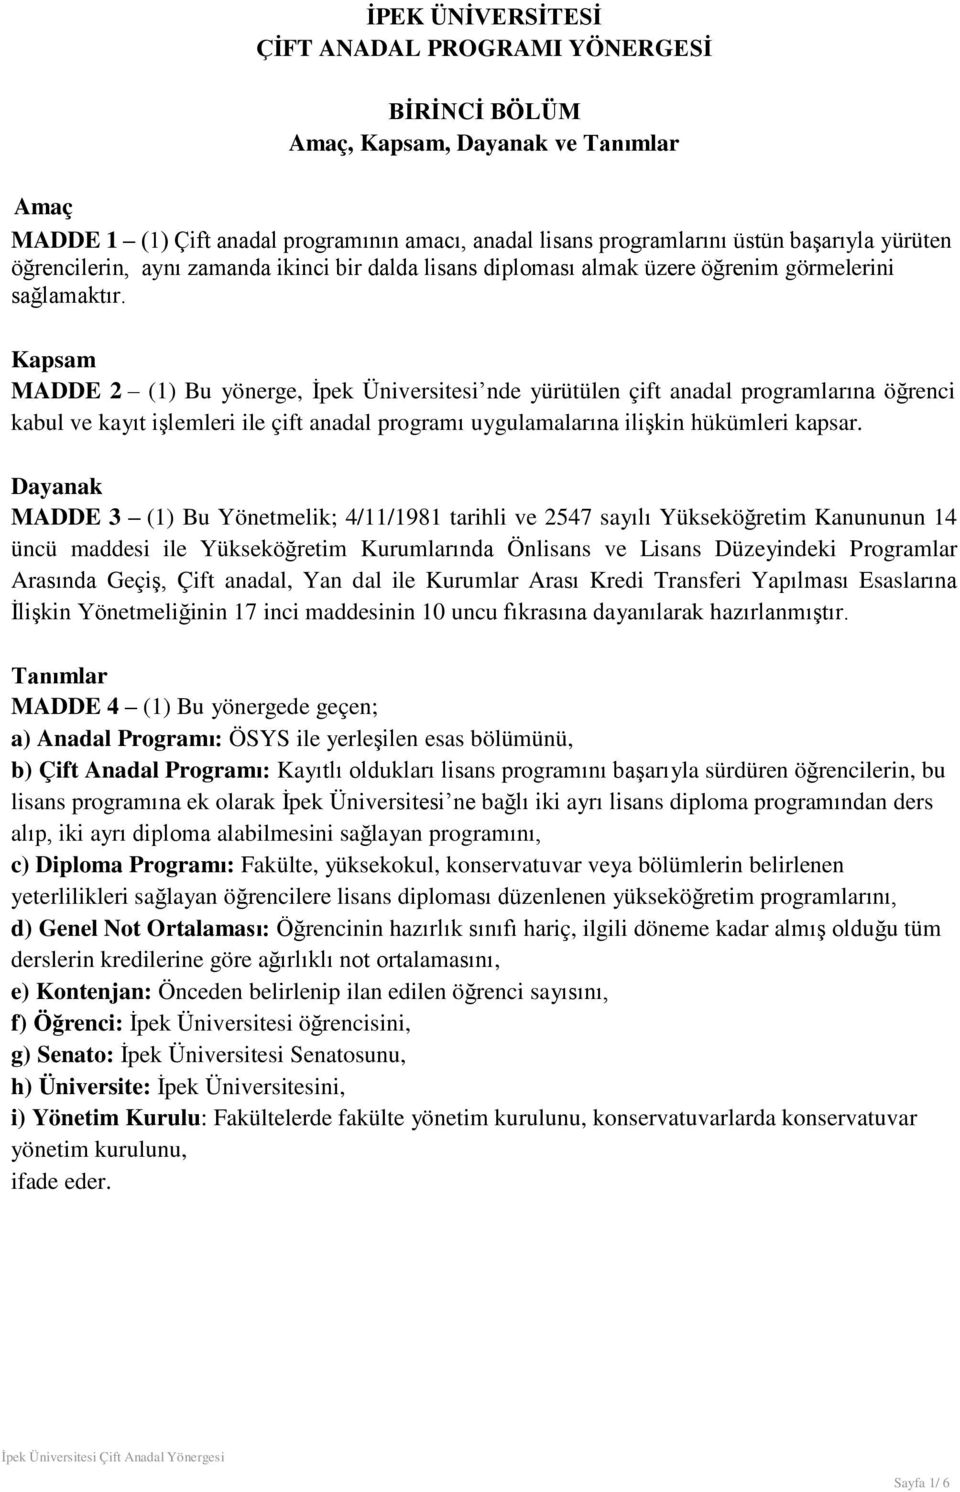 Kapsam MADDE 2 (1) Bu yönerge, İpek Üniversitesi nde yürütülen çift anadal programlarına öğrenci kabul ve kayıt işlemleri ile çift anadal programı uygulamalarına ilişkin hükümleri kapsar.